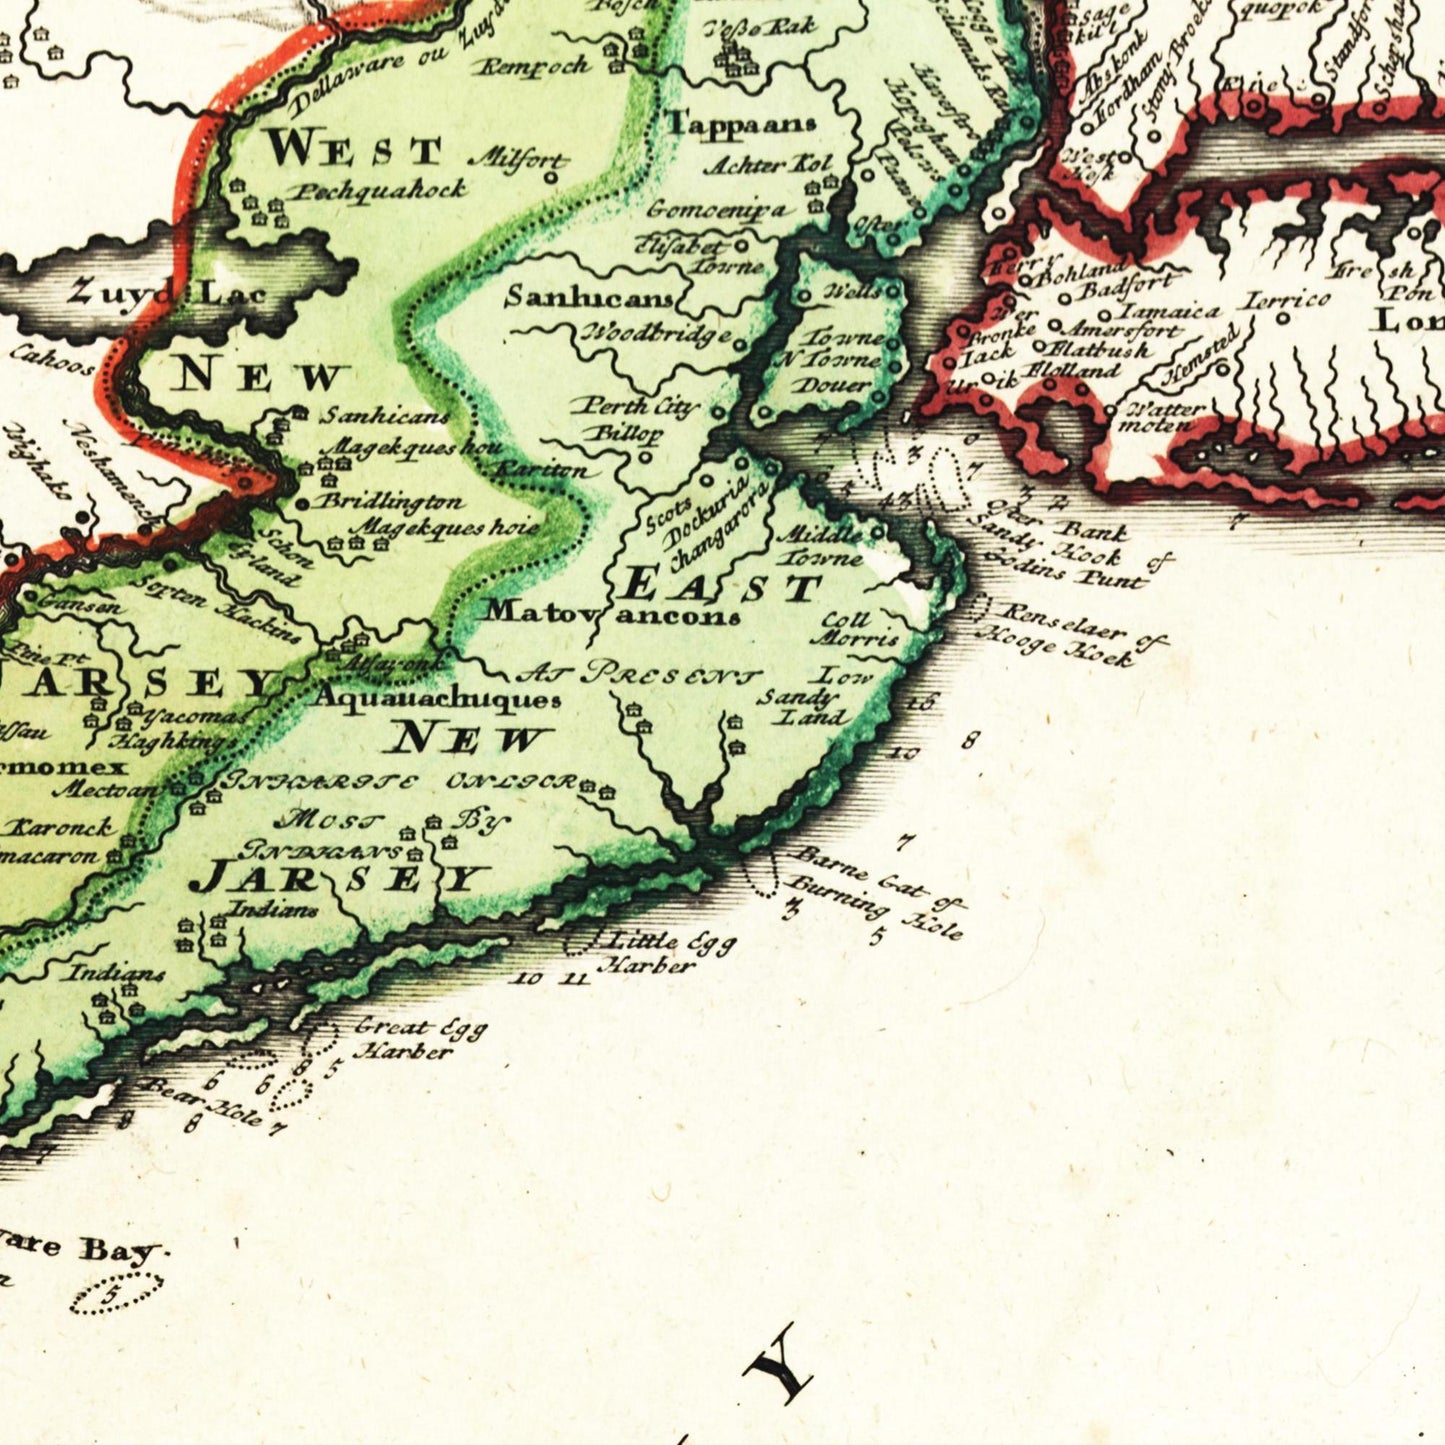 Historische Landkarte Kolonie Virginia um 1750